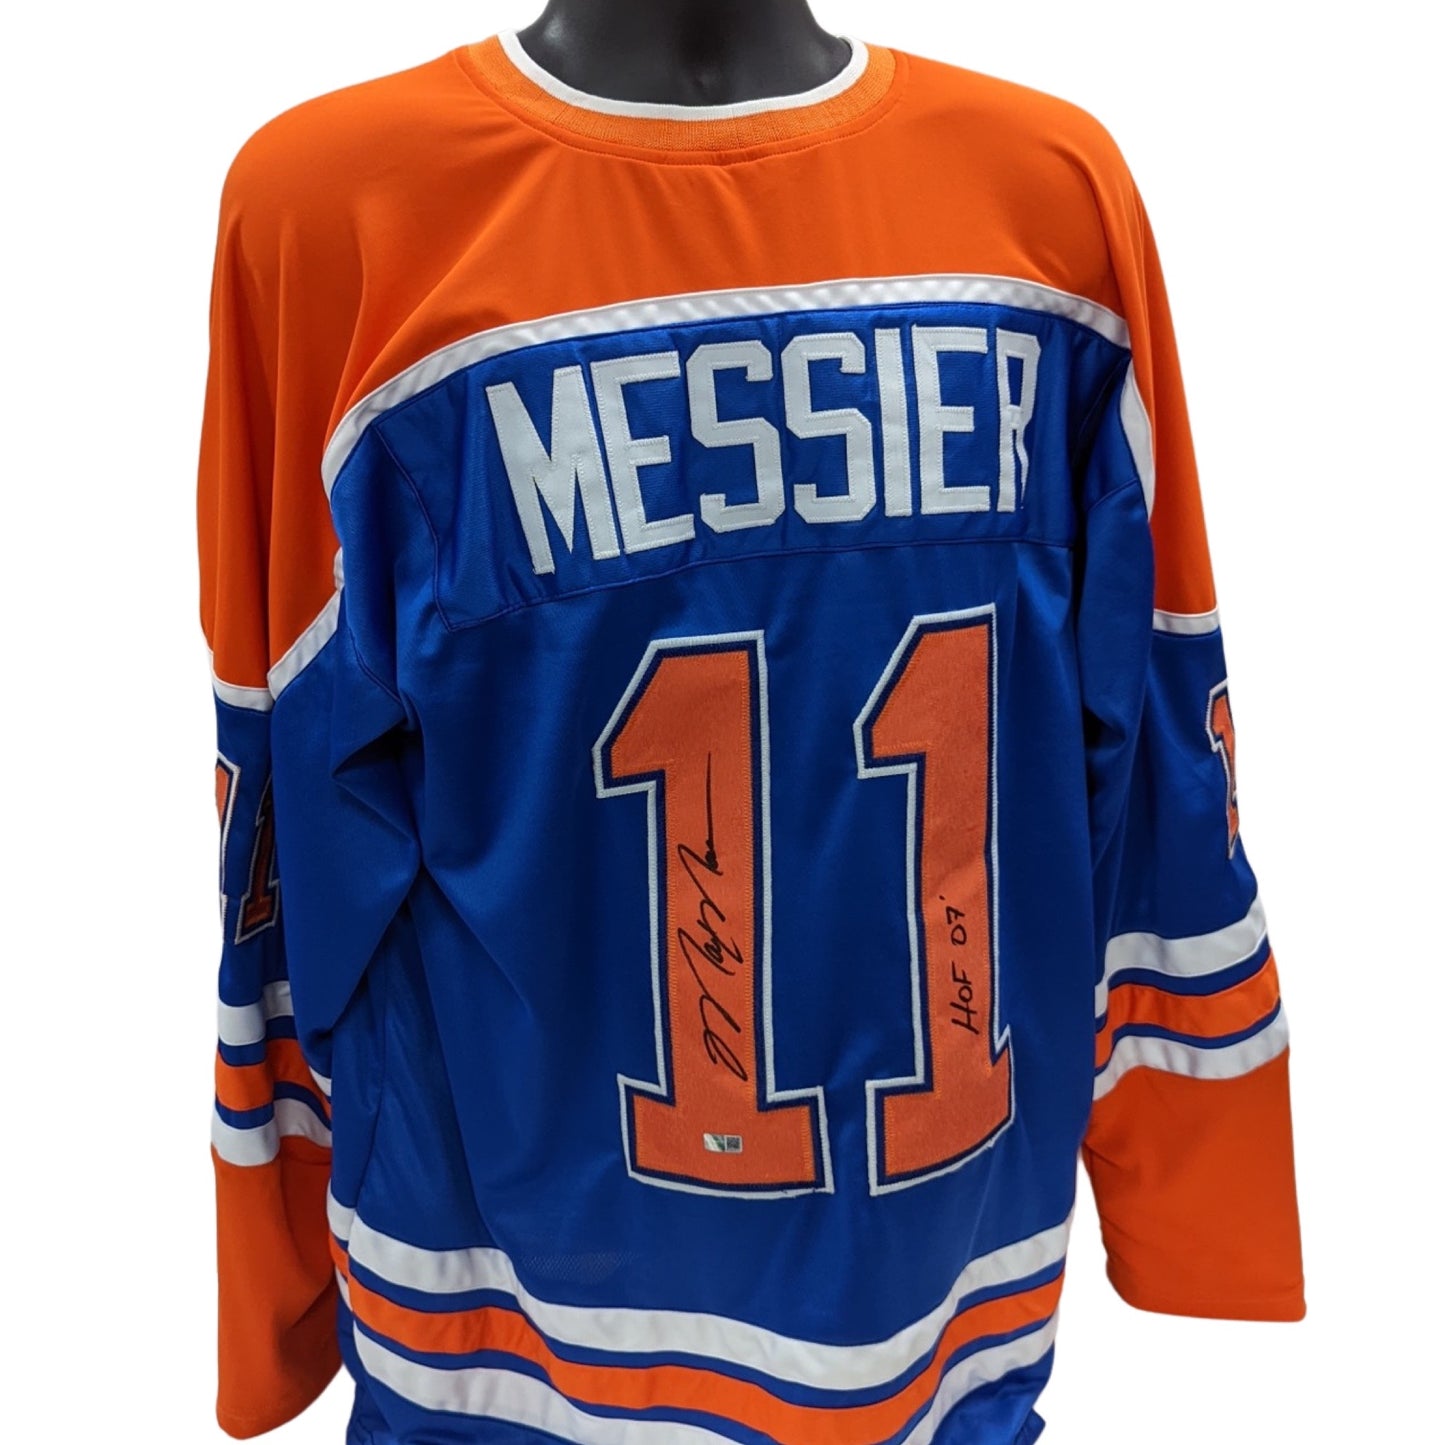 Mark Messier Autographed Edmonton Oilers Blue Jersey “HOF 07” Inscription Steiner CX